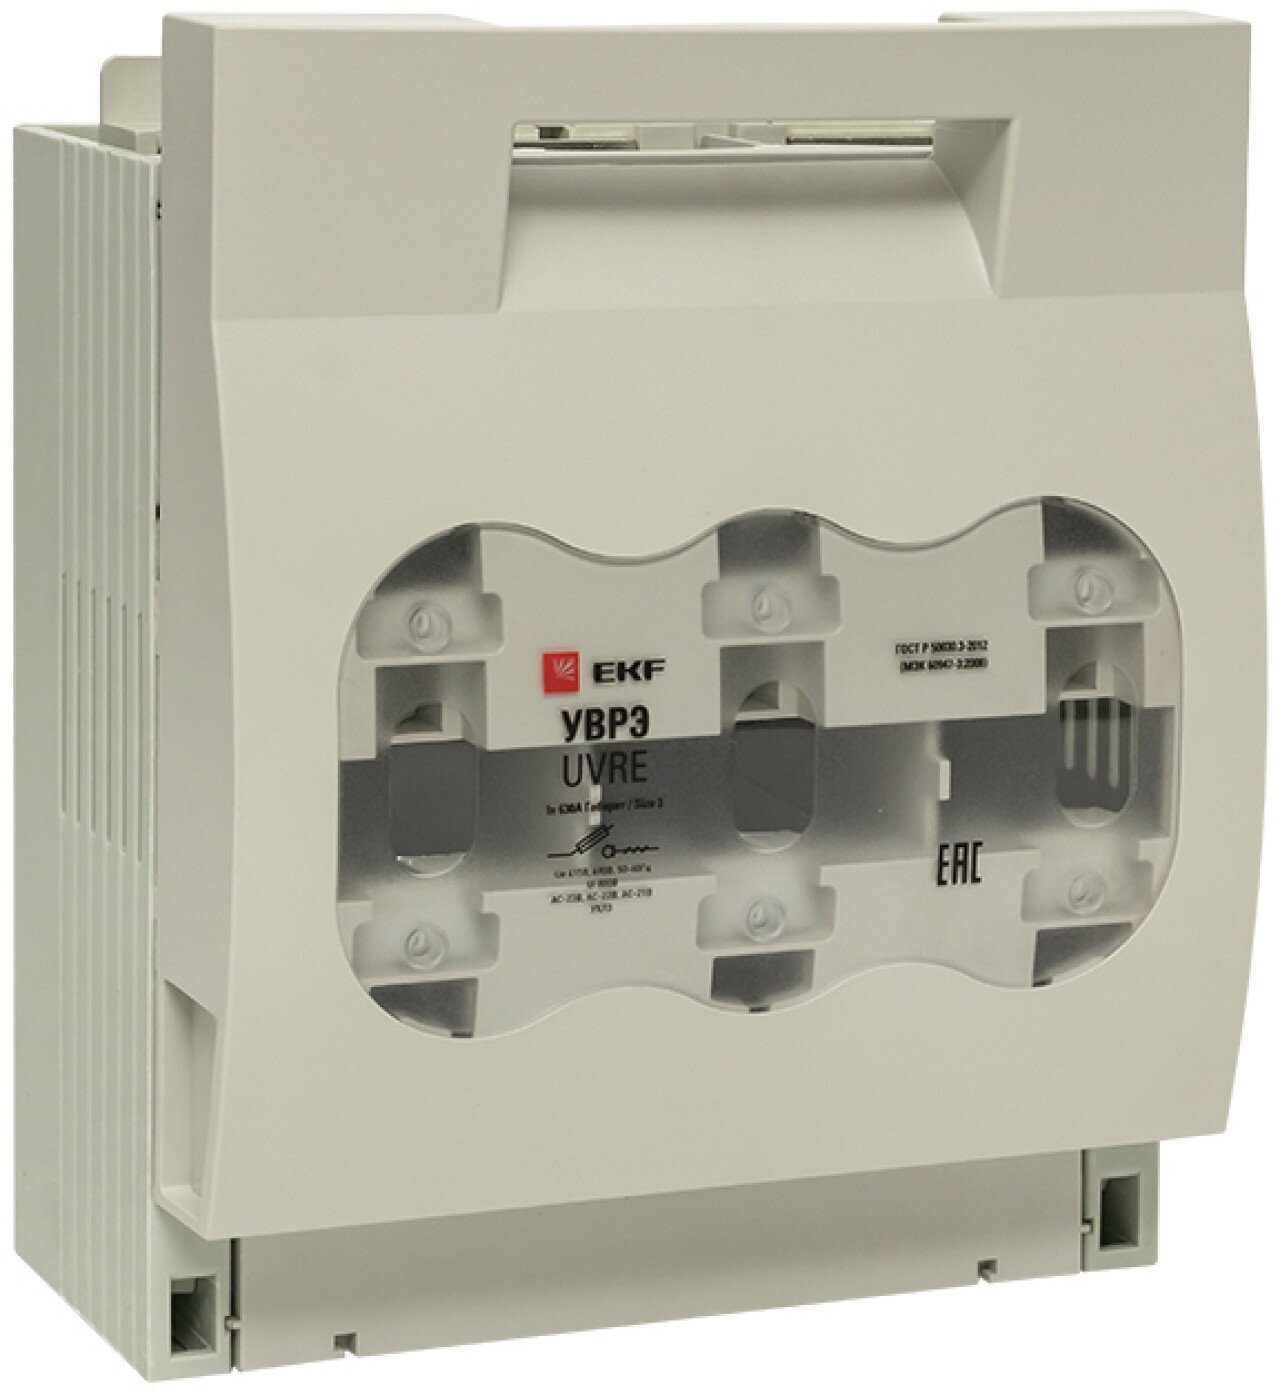 Выключатель-разъединитель уврэ 630А откидного типа под предохранители ППН (габ.3) EKF